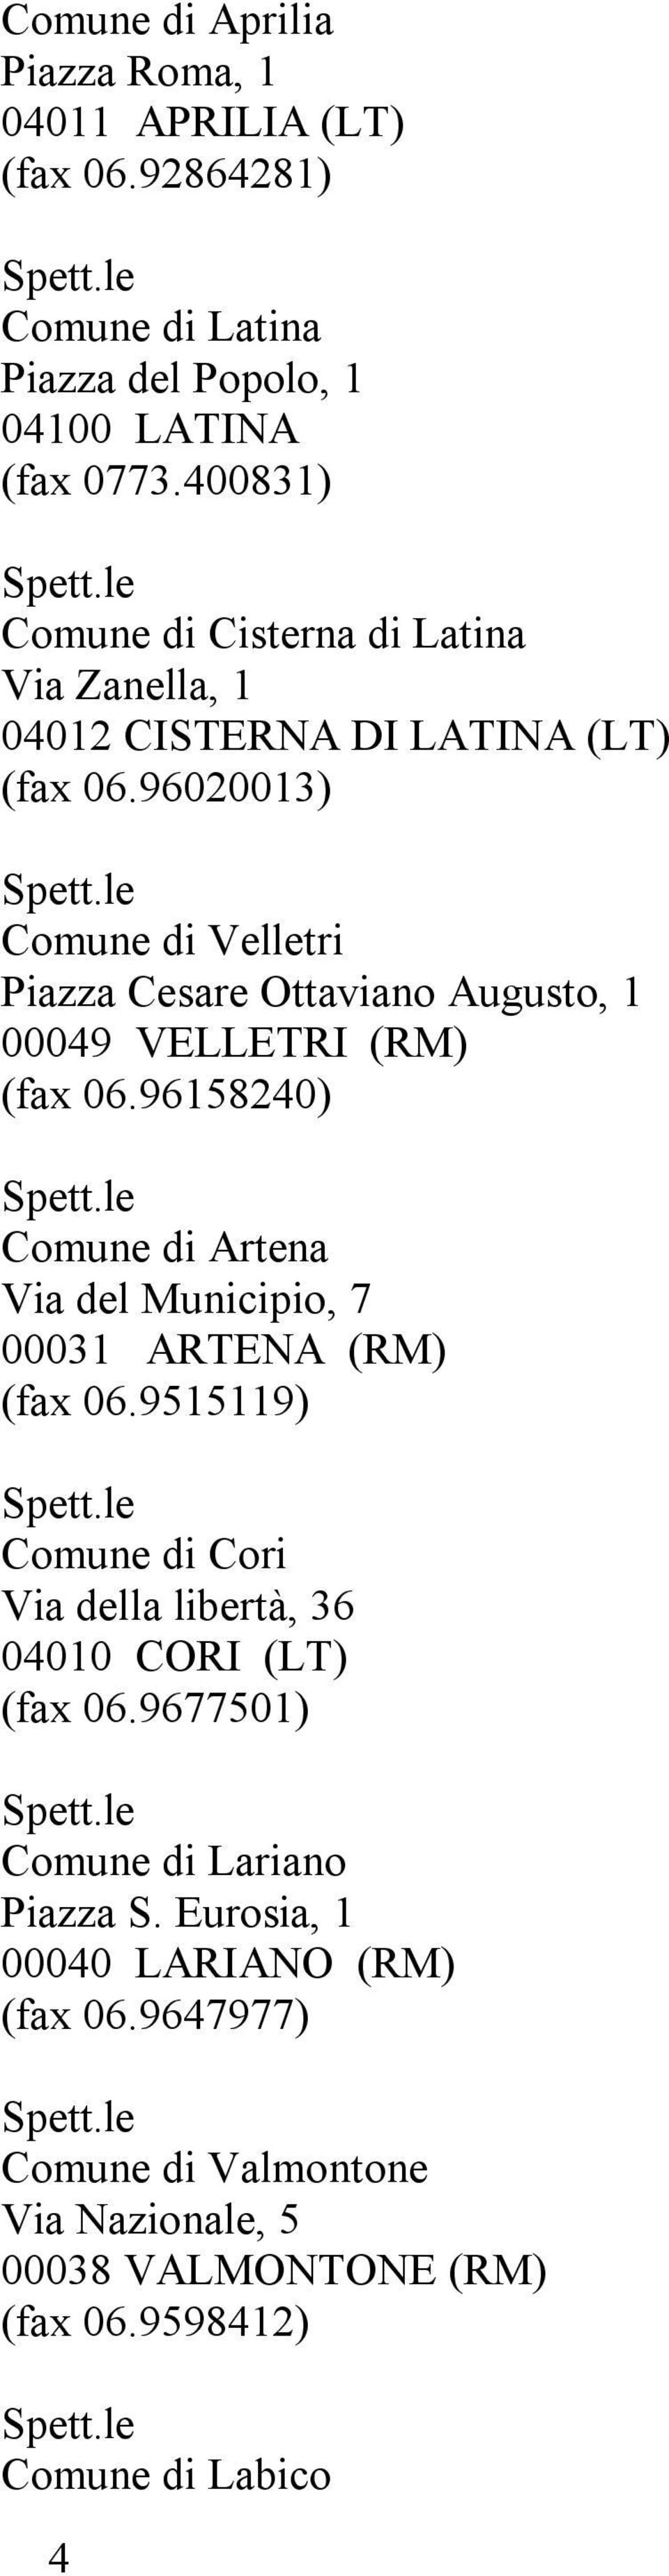 96020013) Comune di Velletri Piazza Cesare Ottaviano Augusto, 1 00049 VELLETRI (RM) (fax 06.